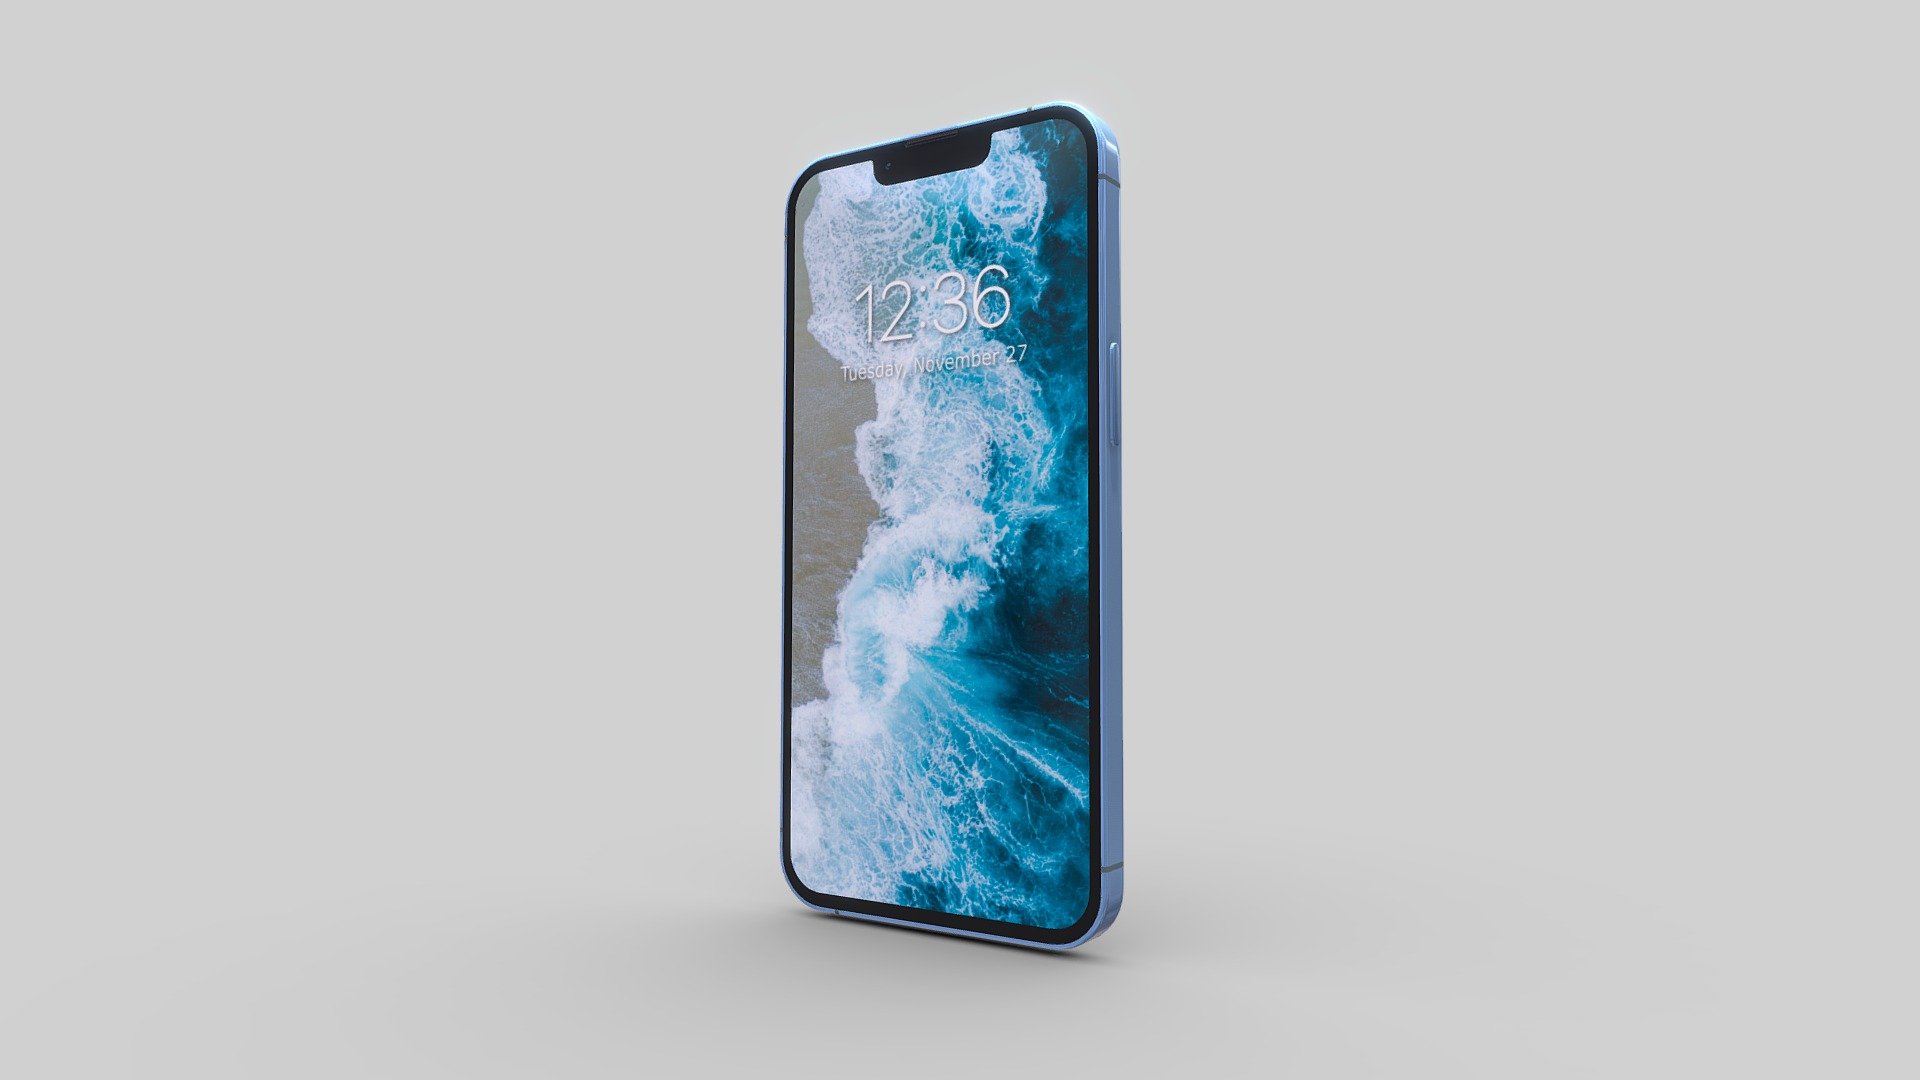 Hình ảnh sâu 3D của iPhone 13 Pro Max sẽ làm cho bạn choáng ngợp với độ chân thực và chi tiết khó tin. Nhấp vào trang web của chúng tôi để tải hình nền độc đáo dành riêng cho chiếc điện thoại này và trang trí cho nó trở nên thật nổi bật.